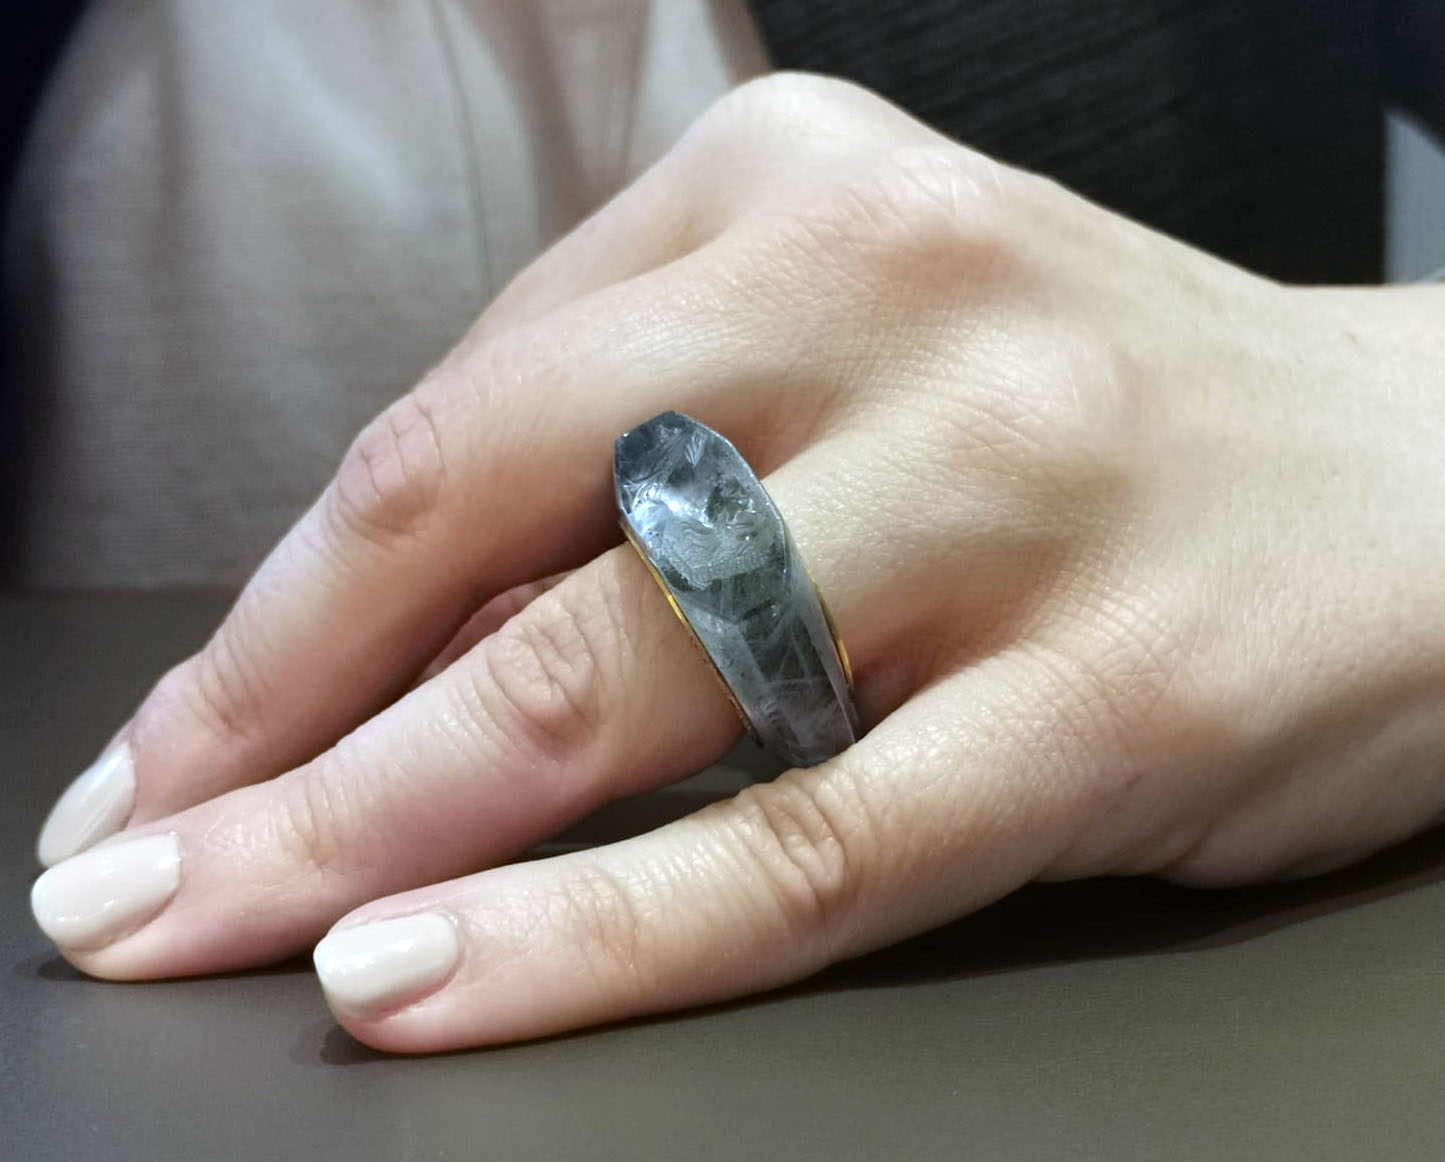 卡利古拉 (Caligula) 擁有 2,000 年曆史的令人驚嘆的藍寶石戒指講述了一個戲劇性的愛情故事 3